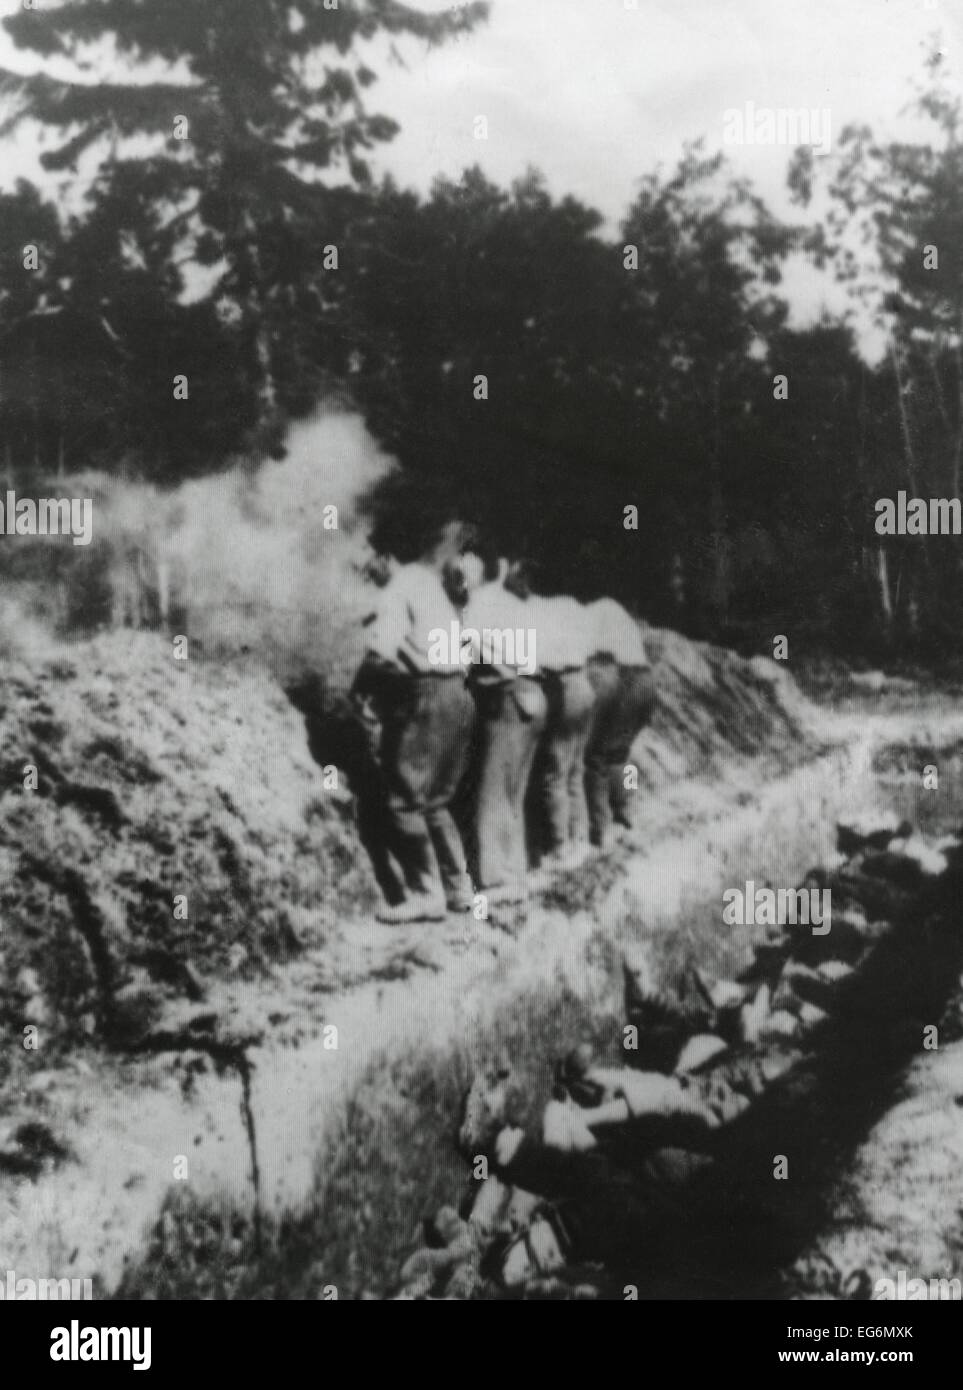 Exécution de la Russie soviétique (hommes) sur le bord d'une fosse commune. Photo trouvée sur un Siedber Allemand Kurt, en septembre 1942. Banque D'Images